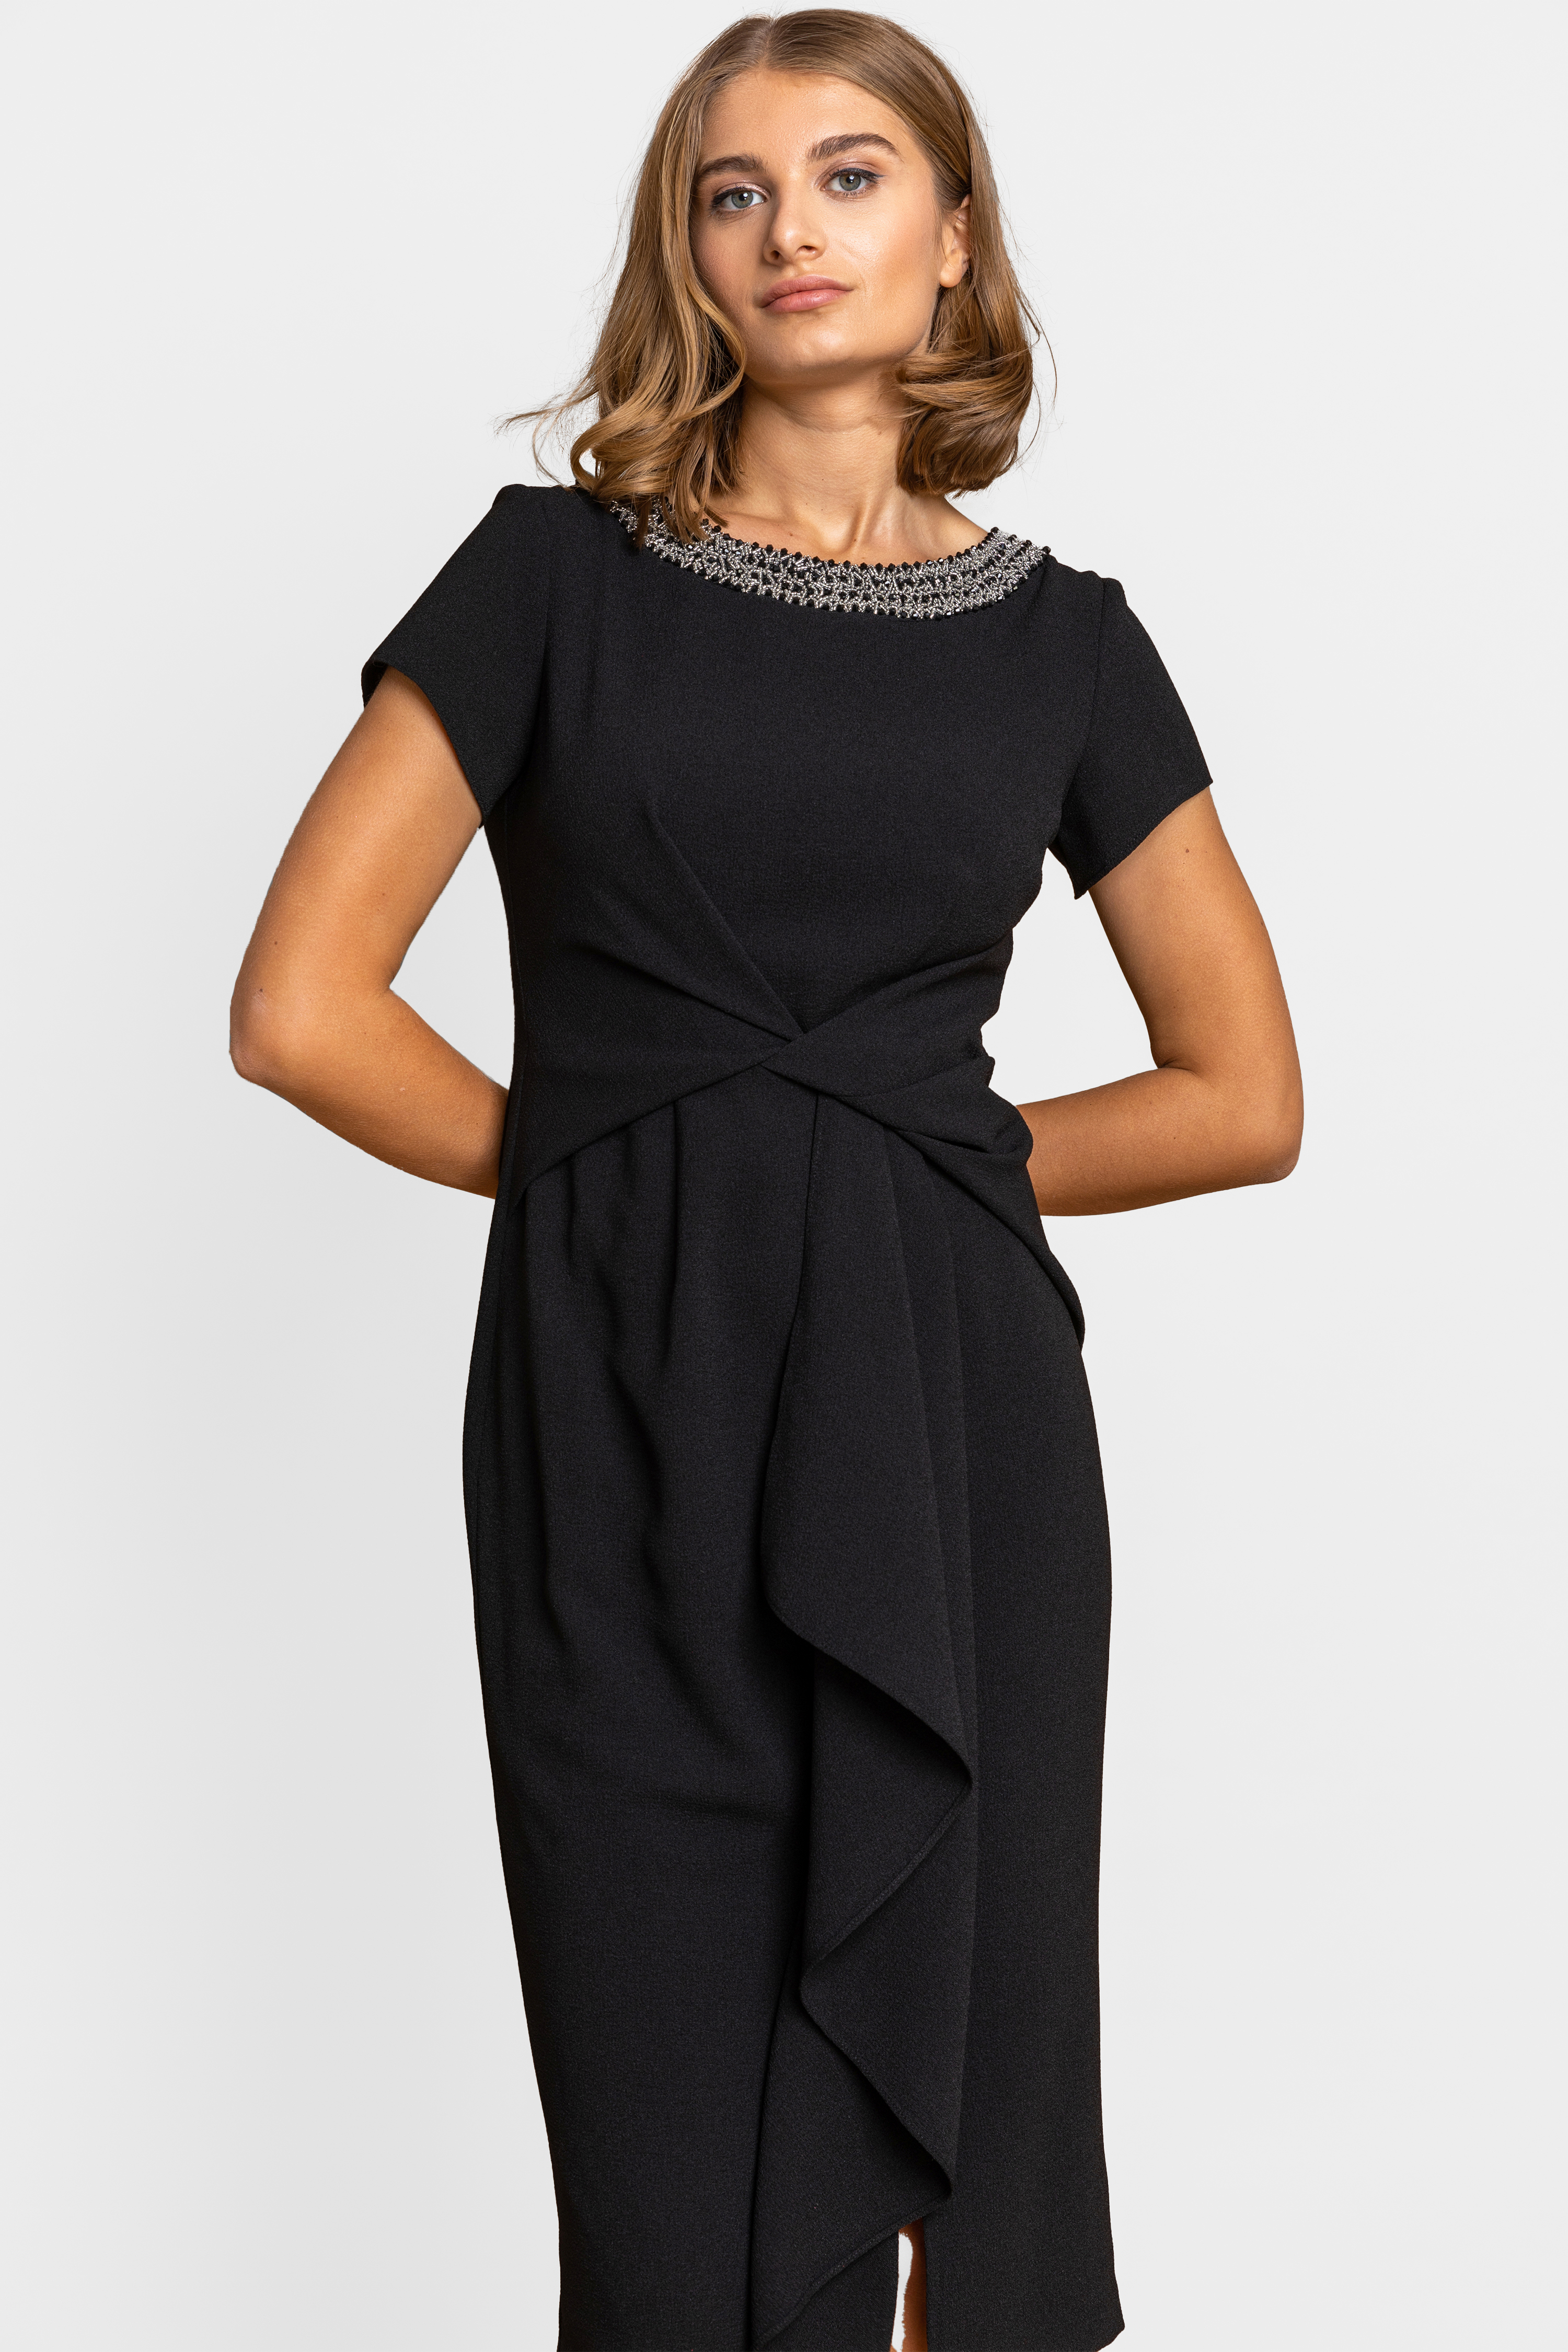 Embellished Twist Waist Midi Dress in Black - Roman Originals UK